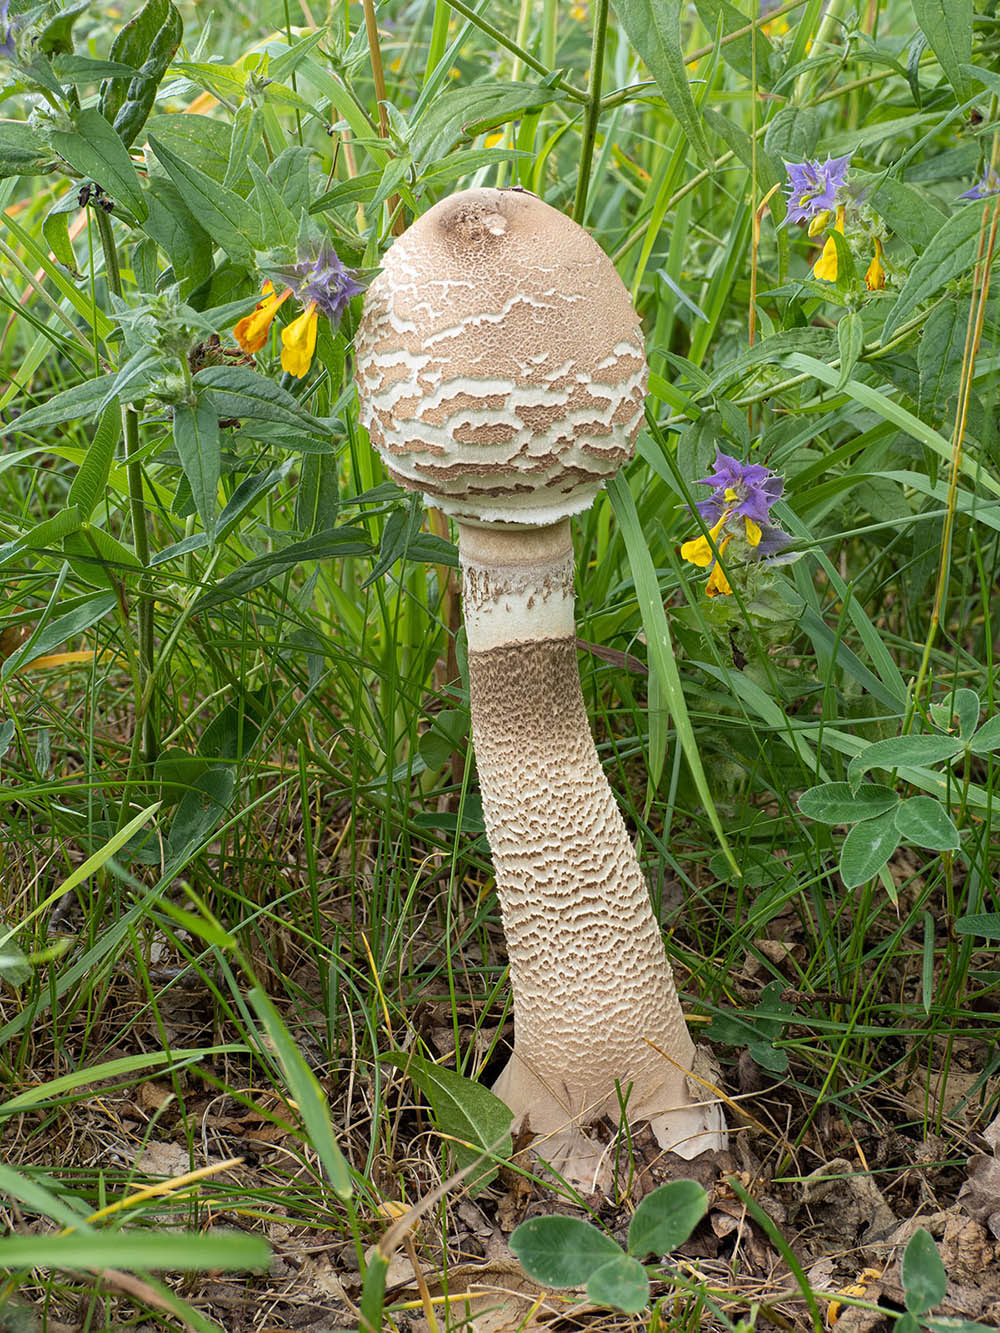 Гриб-зонтик высокий (Macrolepiota procera)Гриб-зонтик высокий (Macrolepiota procera) в природном парке G?rv?ln, Стокгольм. Июль 2020 года. Автор фото: Сутормина Марина